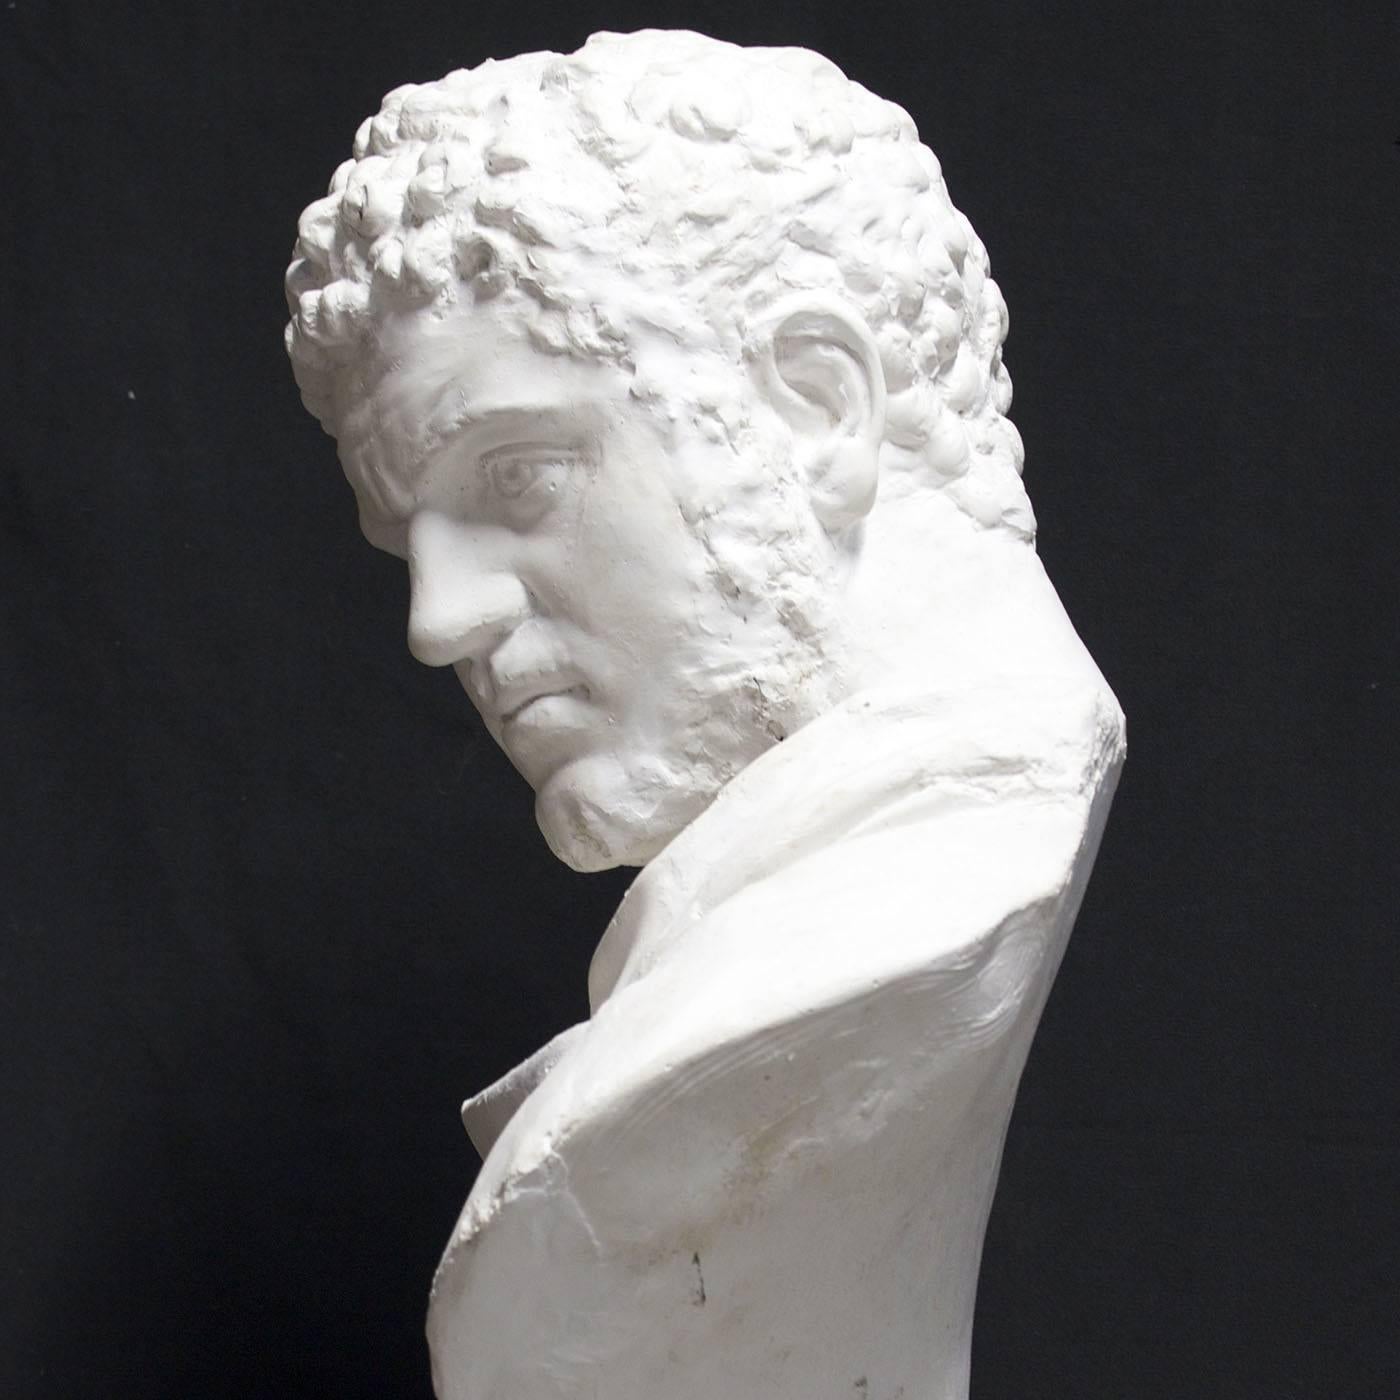 Il s'agit du buste de l'empereur romain Caracalla, modelé d'après une célèbre sculpture exposée au musée du Vatican. À l'époque romaine, ce buste était une représentation particulièrement innovante, car le visage est tourné vers la gauche au lieu de